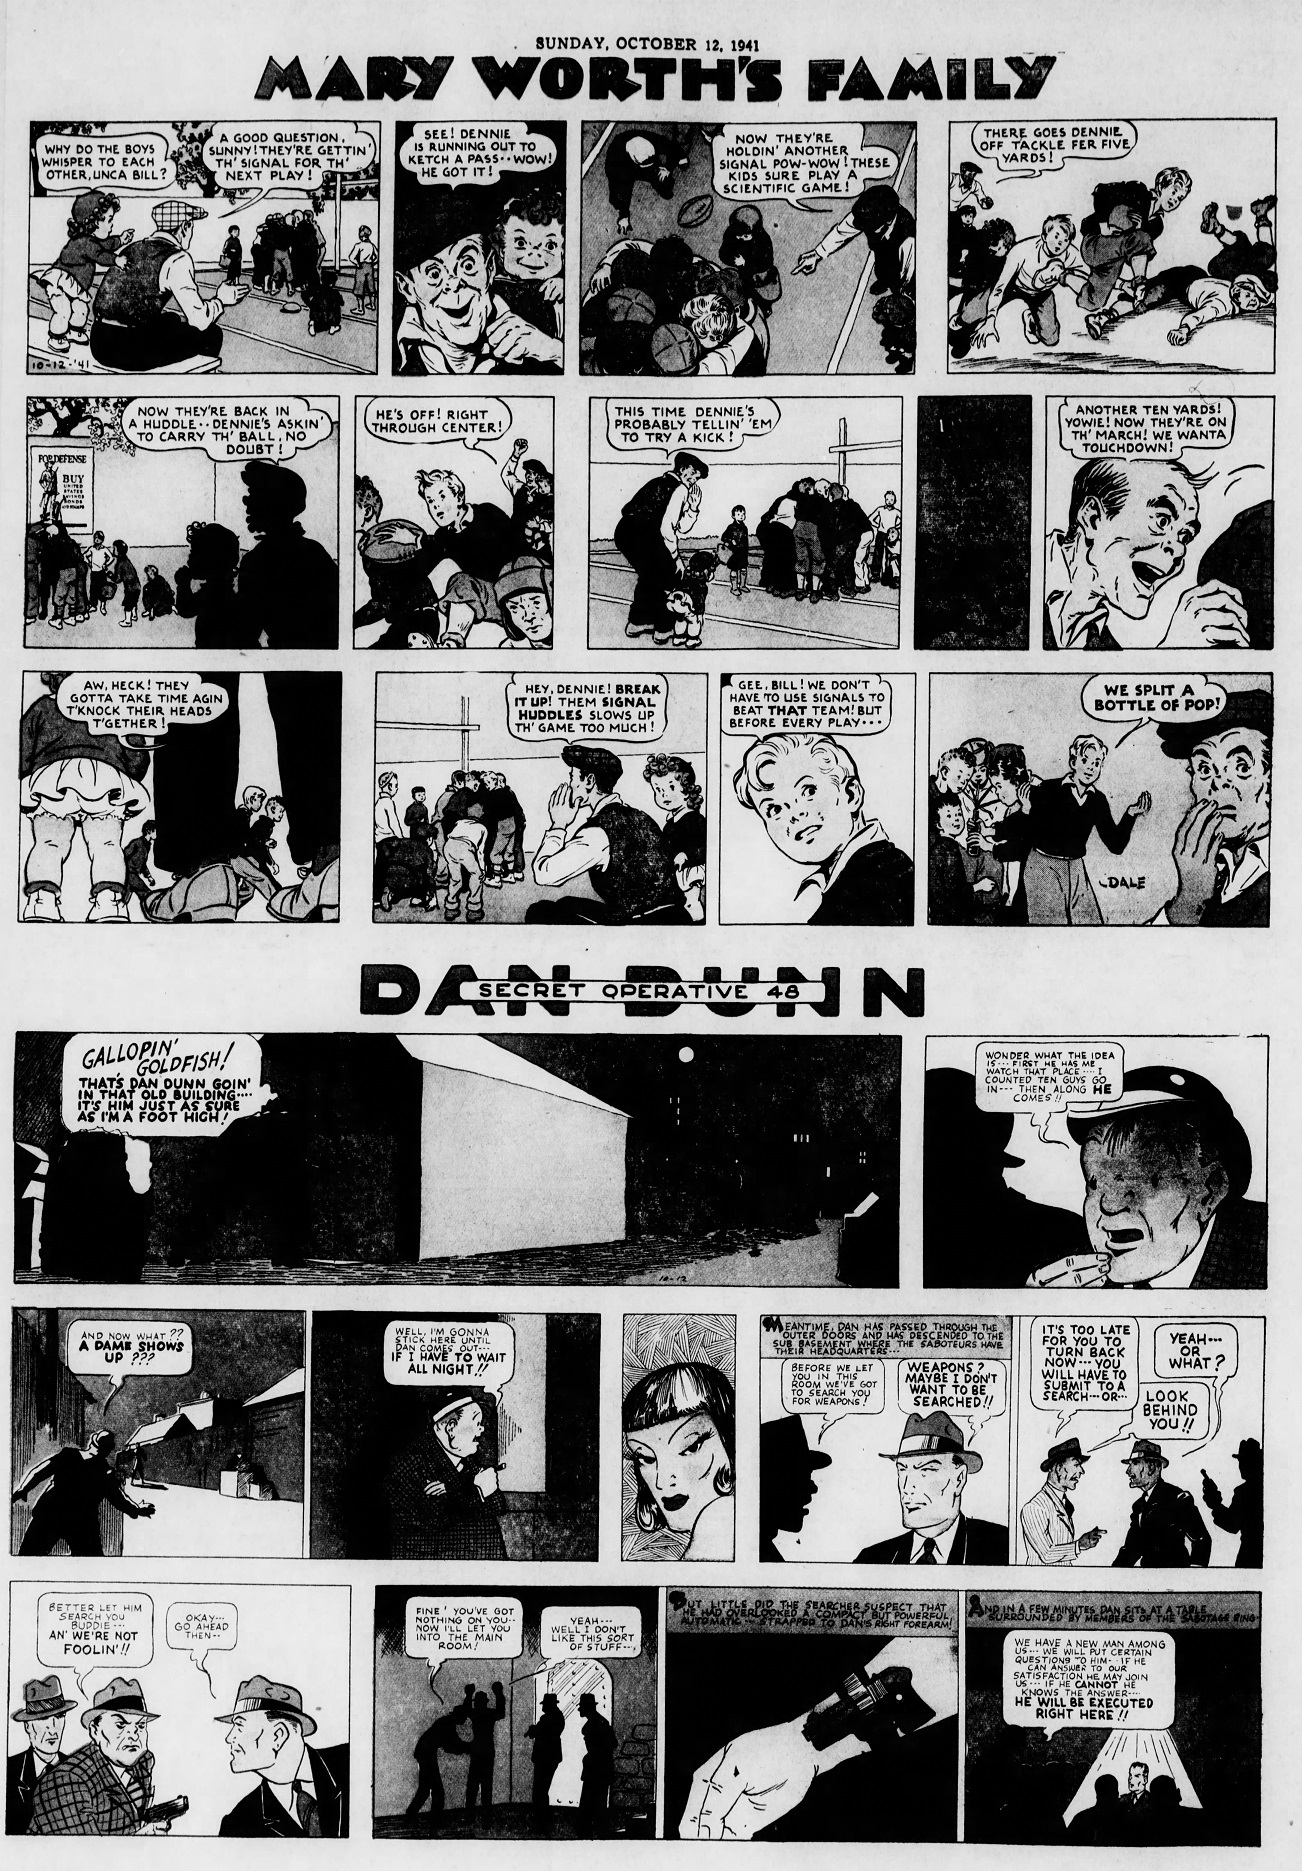 The_Brooklyn_Daily_Eagle_Sun__Oct_12__1941_(7).jpg